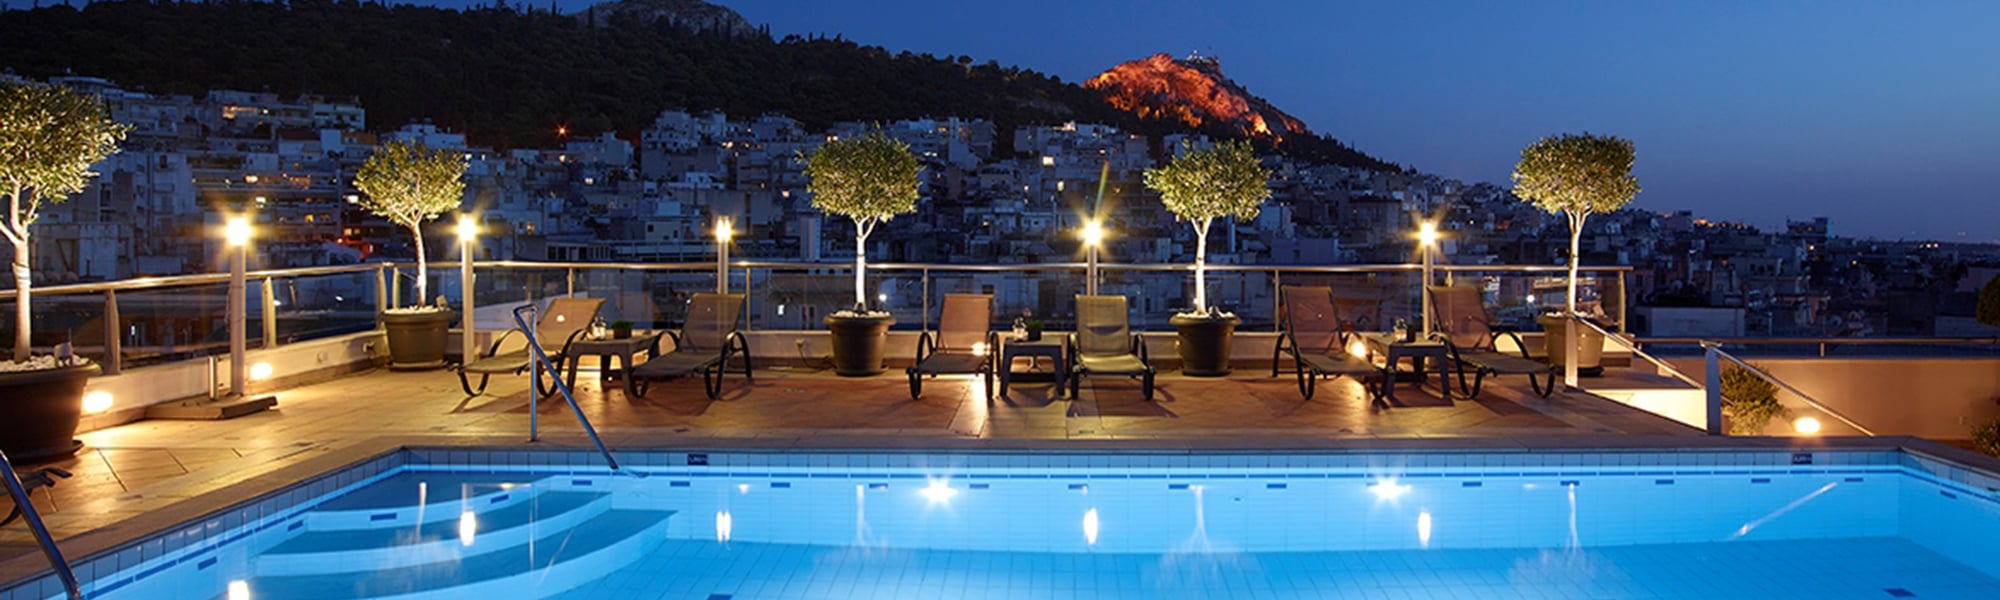 AthensZafoliaHotel_pool at night_slider.jpg